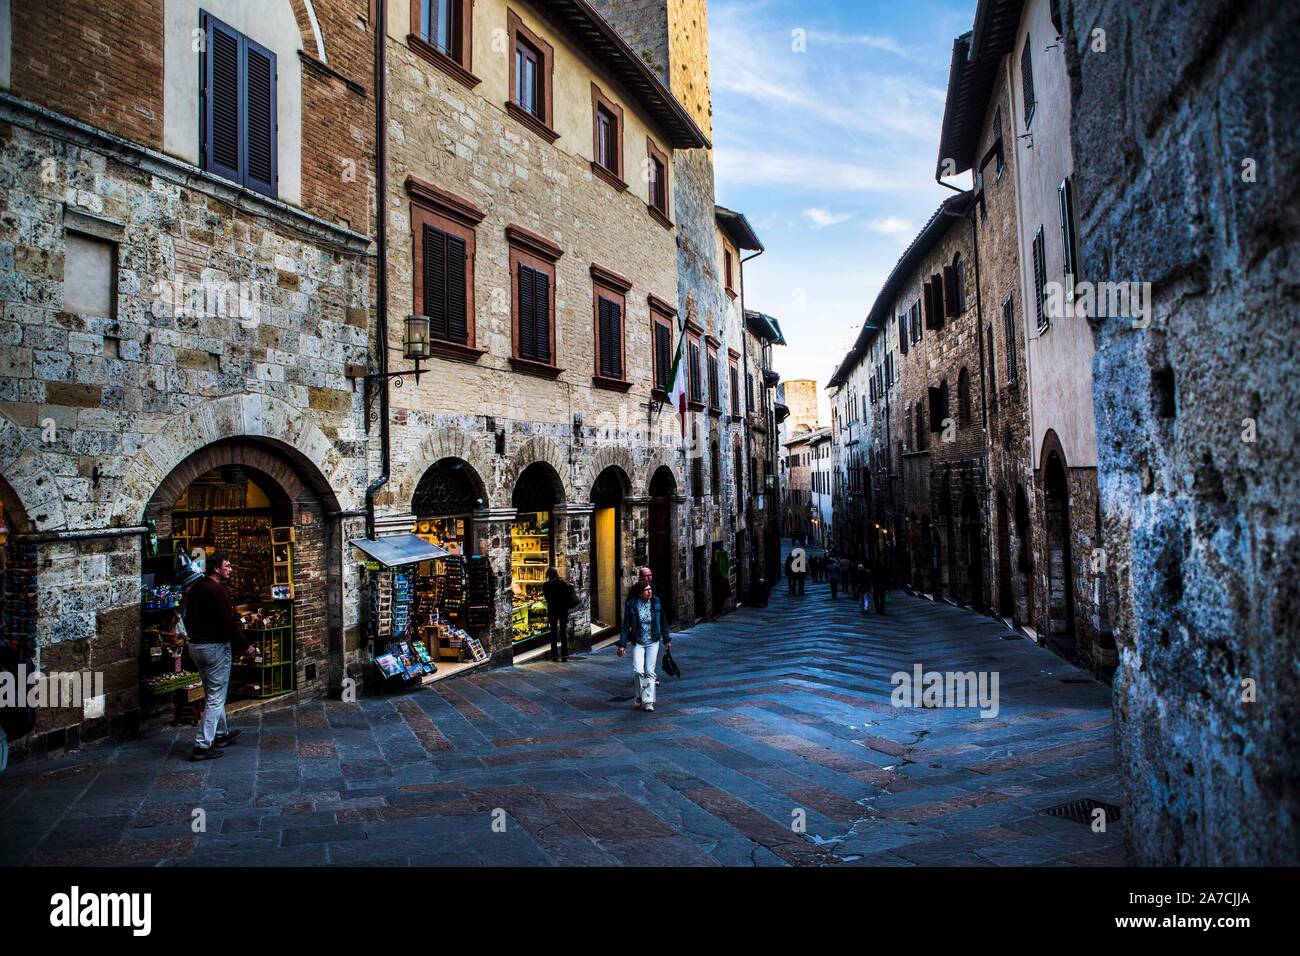 San Gimignano ist eine der mittelalterlichen bekanntesten Städte Italiens. Die Kleinstadt hat fast 8000 Einwohner und ist bekannt durch seine Geschlec Foto de stock